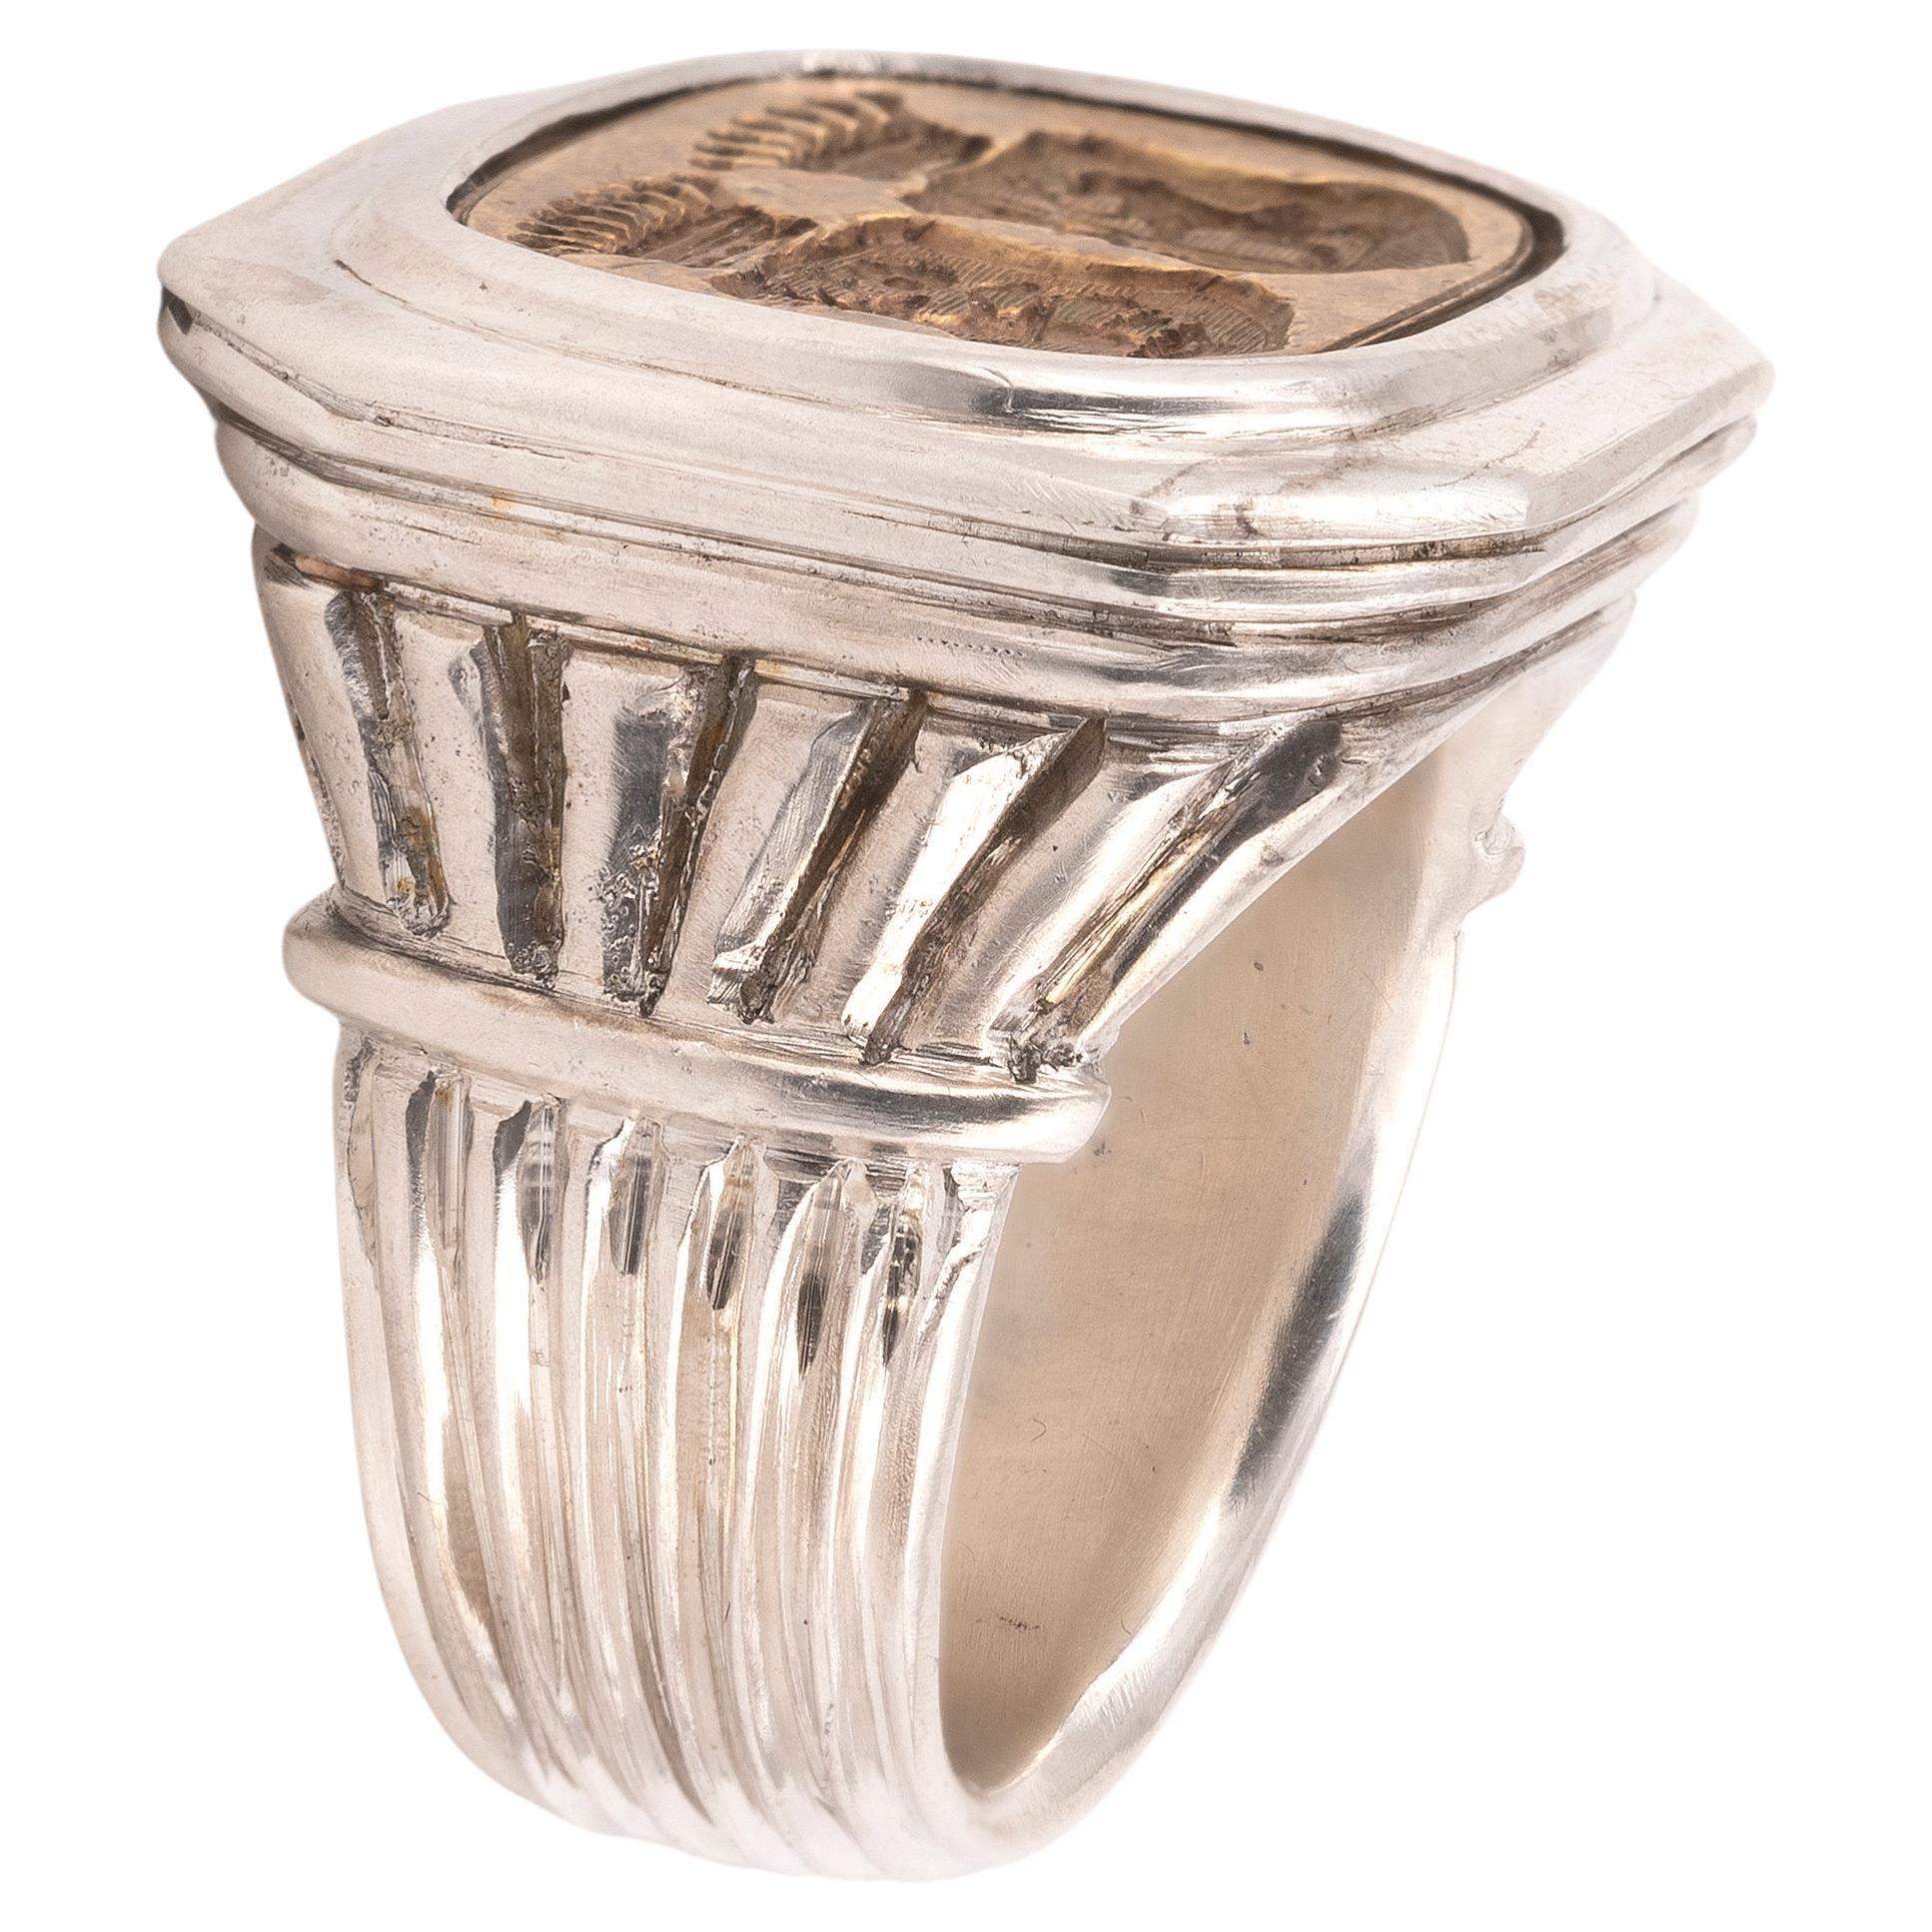 Forme octogonale en argent et en bronze avec anneau en forme d'emblème familial.
Taille du sommet 24mm x 25mm
Taille : 9 3/4
Poids : 41.57gr.